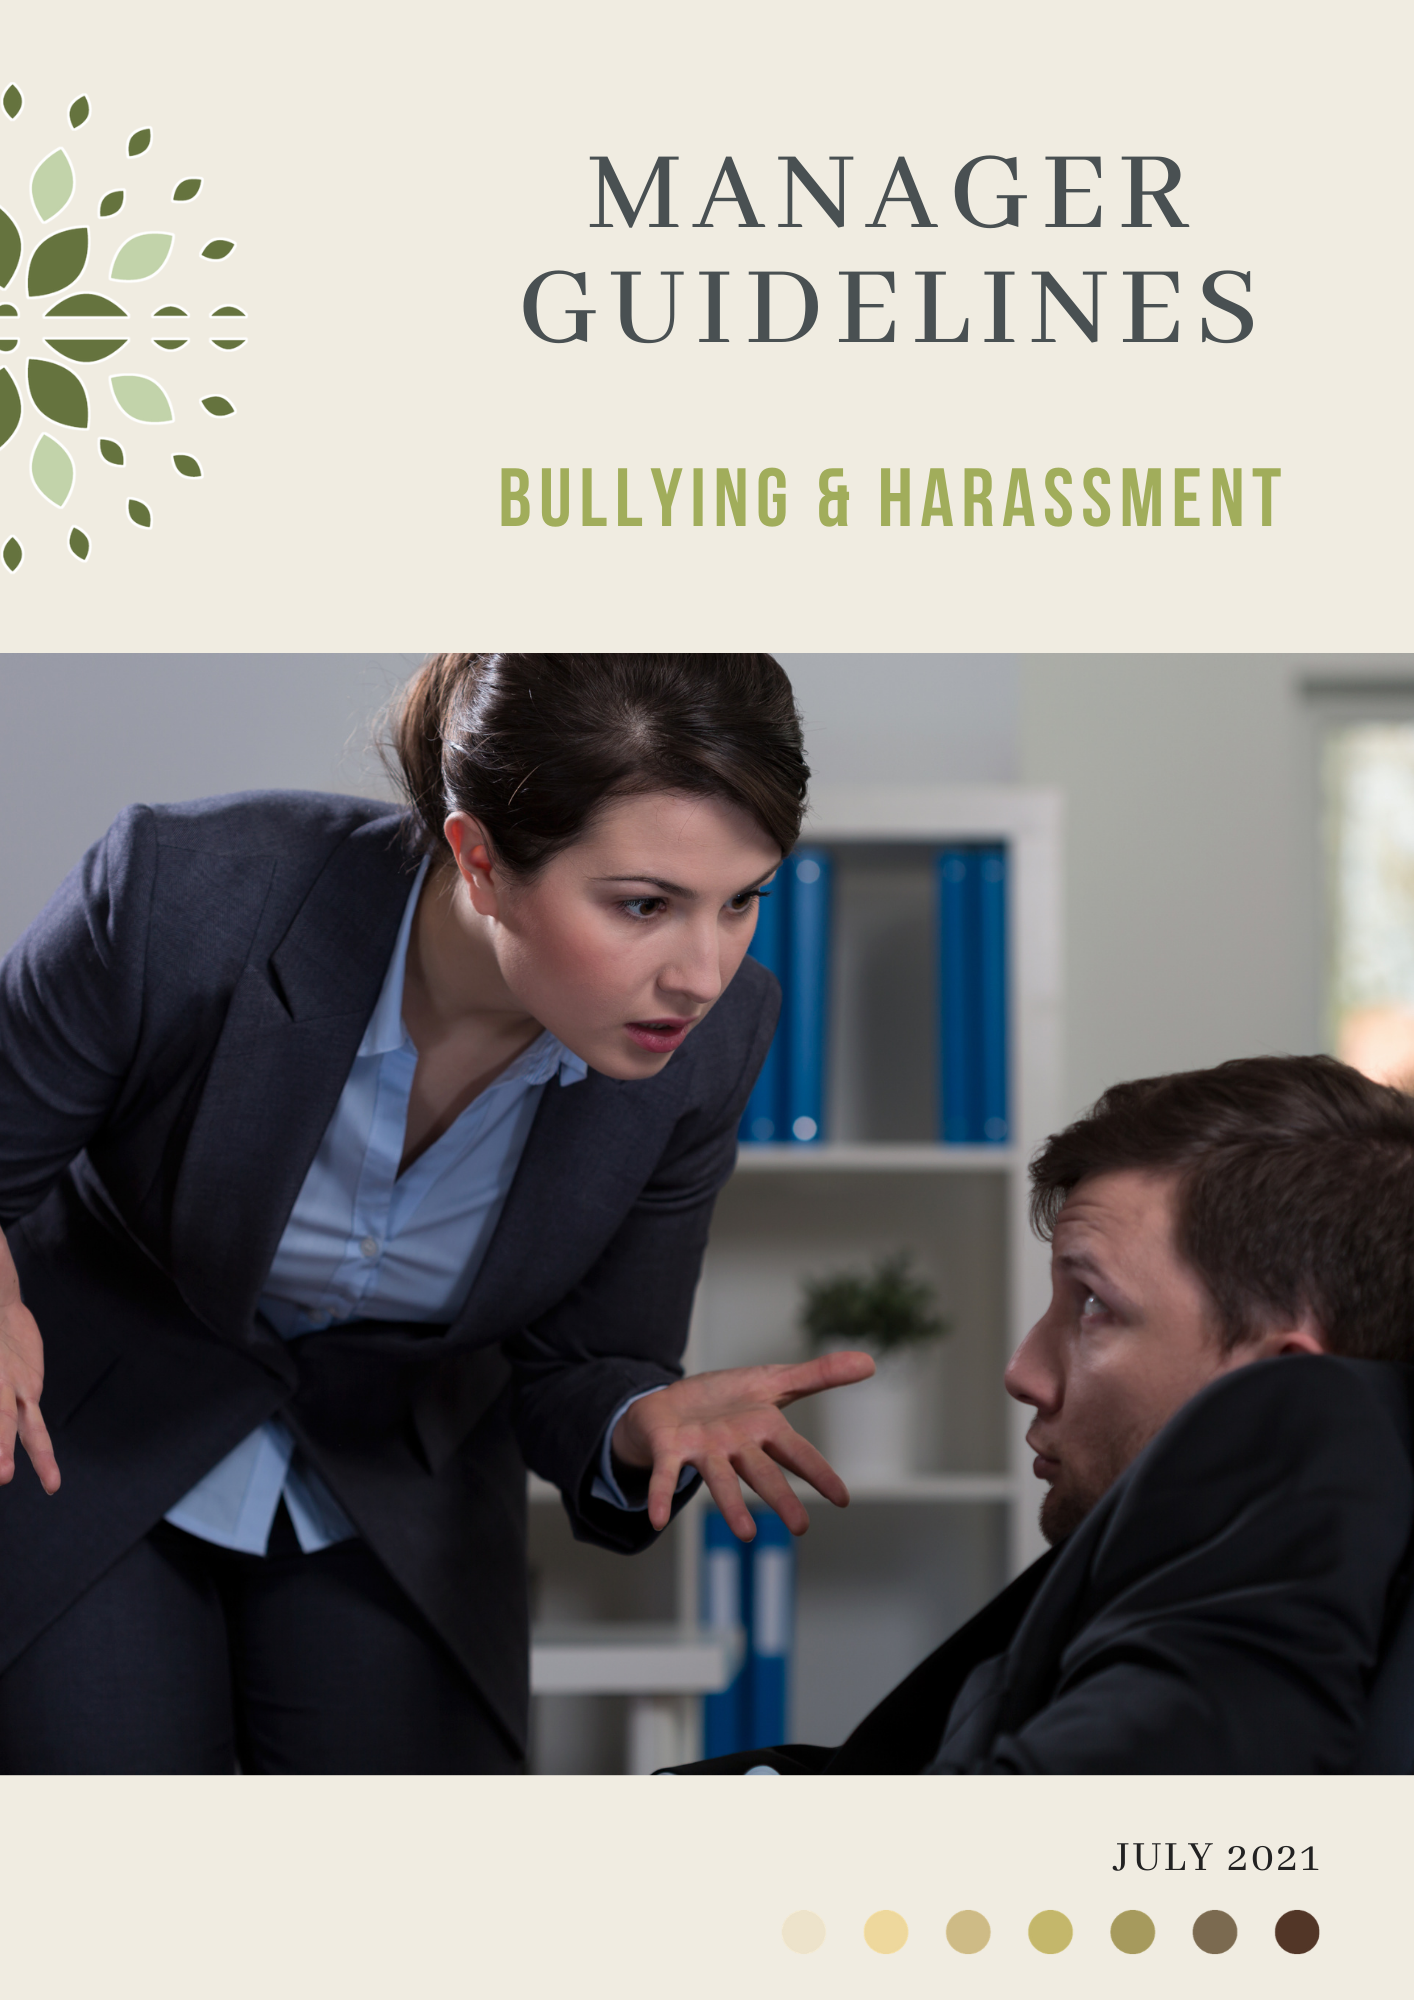 Bullying & Harassment